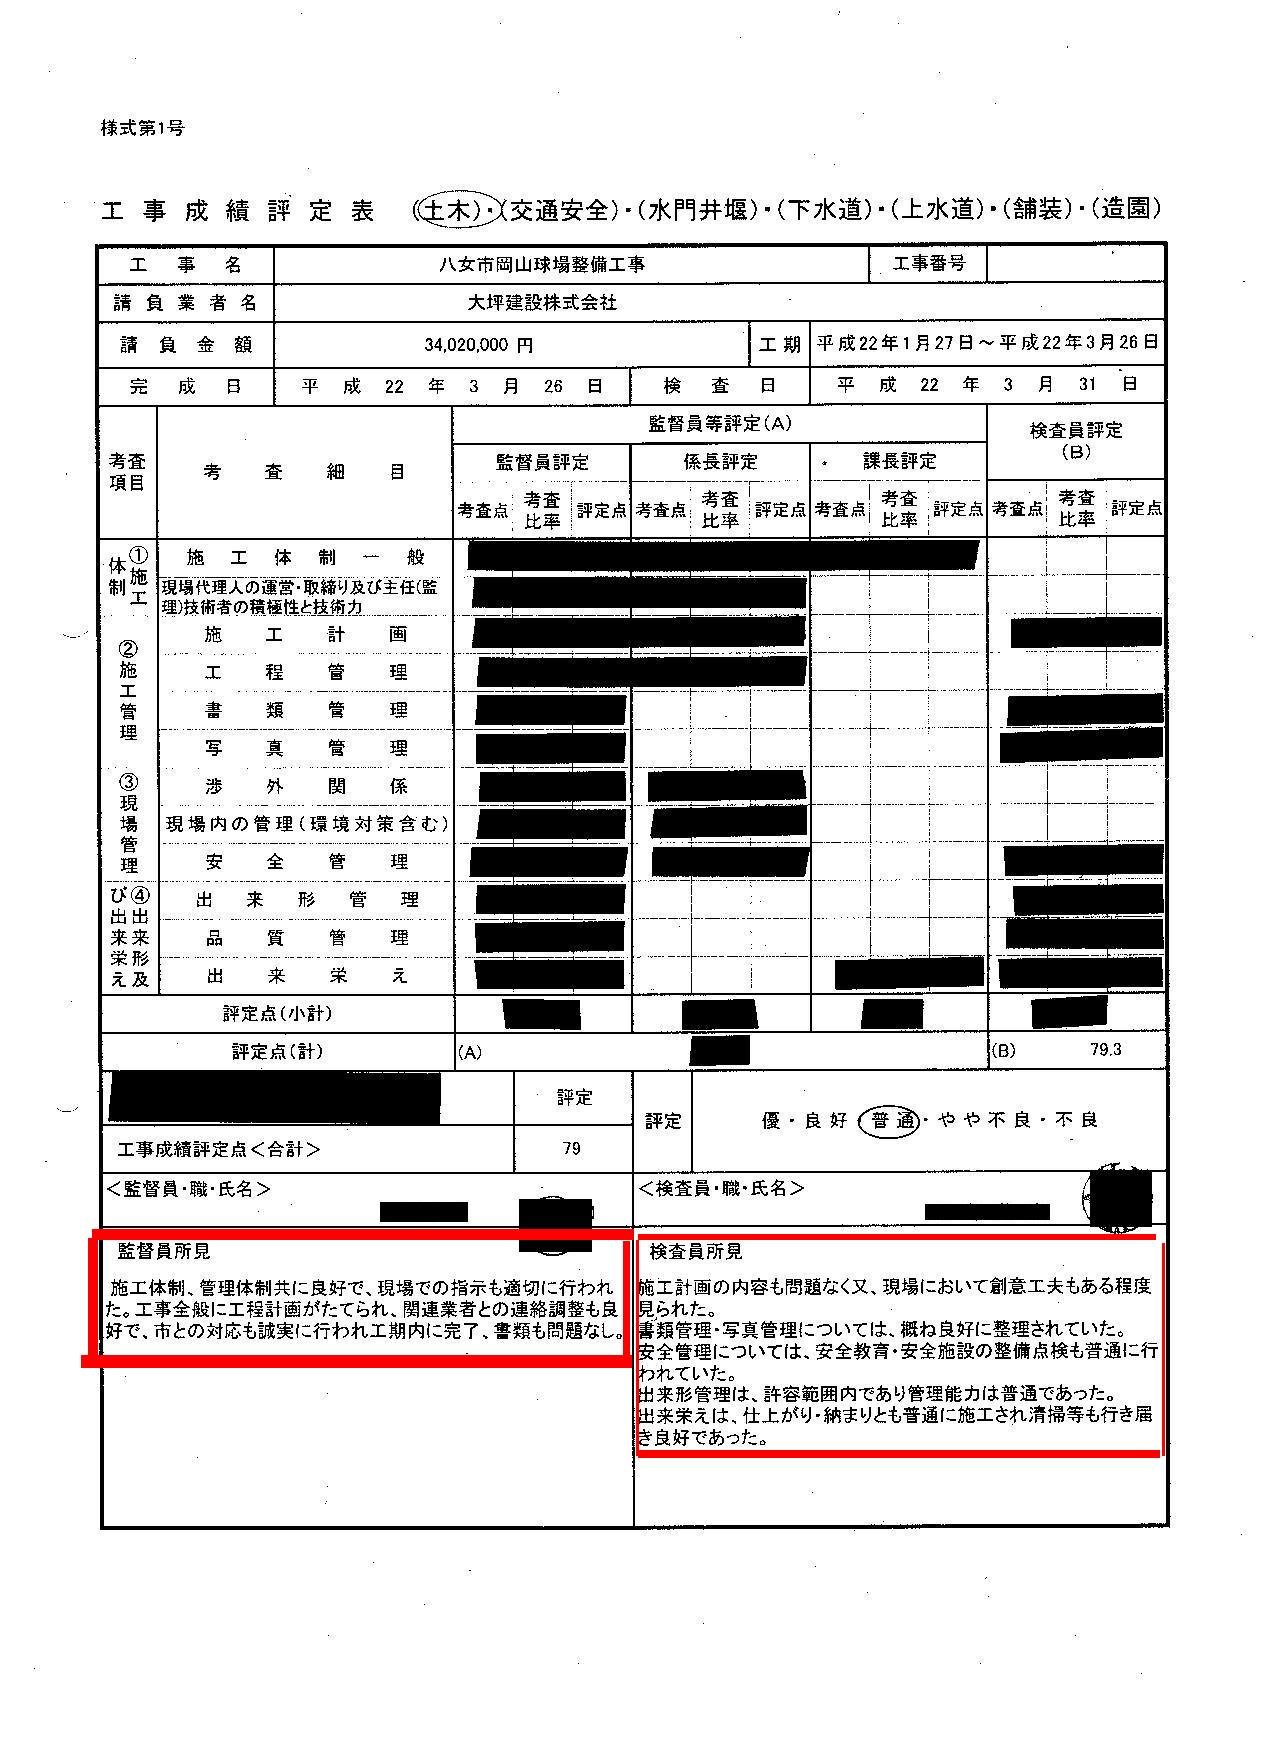 http://hunter-investigate.jp/news/2012/01/31/gennpatu%20940.jpg